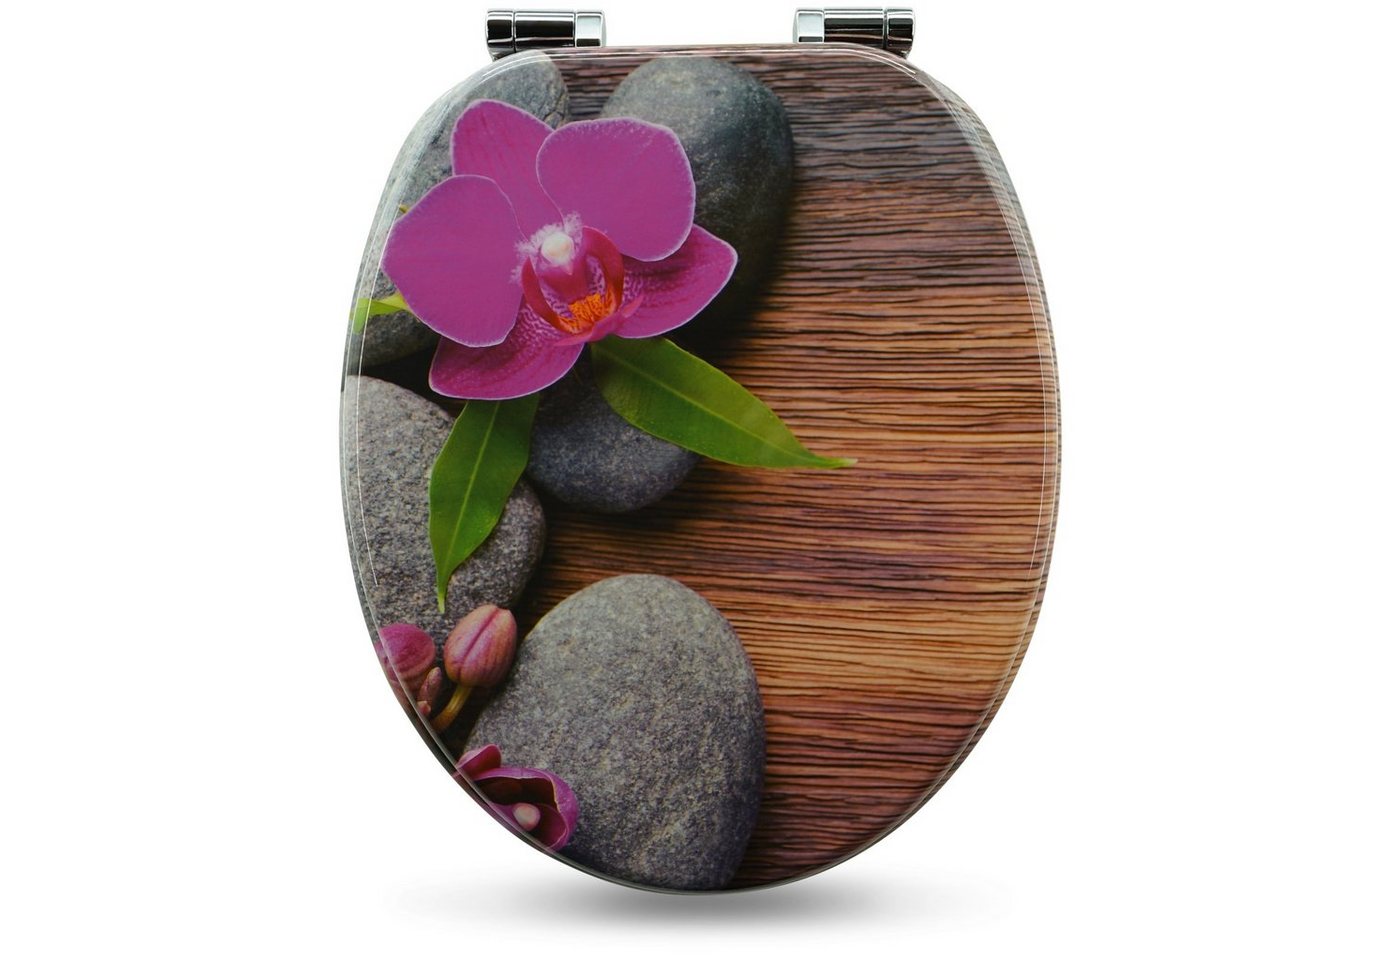 Sanfino WC-Sitz Orchid" Premium Toilettendeckel mit Absenkautomatik aus Holz, mit schönem Blumen-Motiv, hohem Sitzkomfort, einfache Montage" von Sanfino